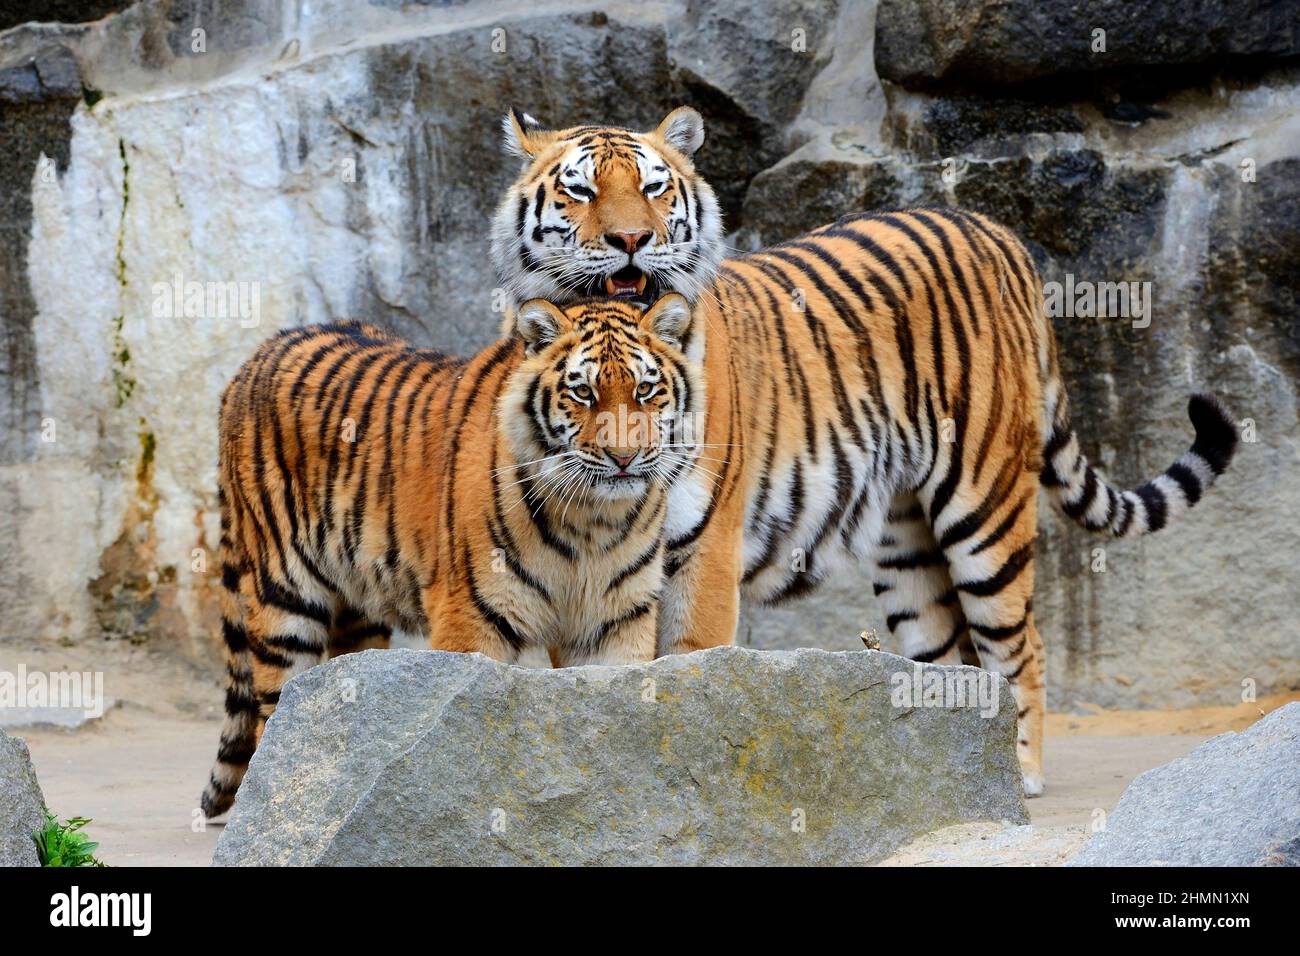 Siberian tiger, Amurian tiger (Panthera tigris altaica), pair between rocks Stock Photo